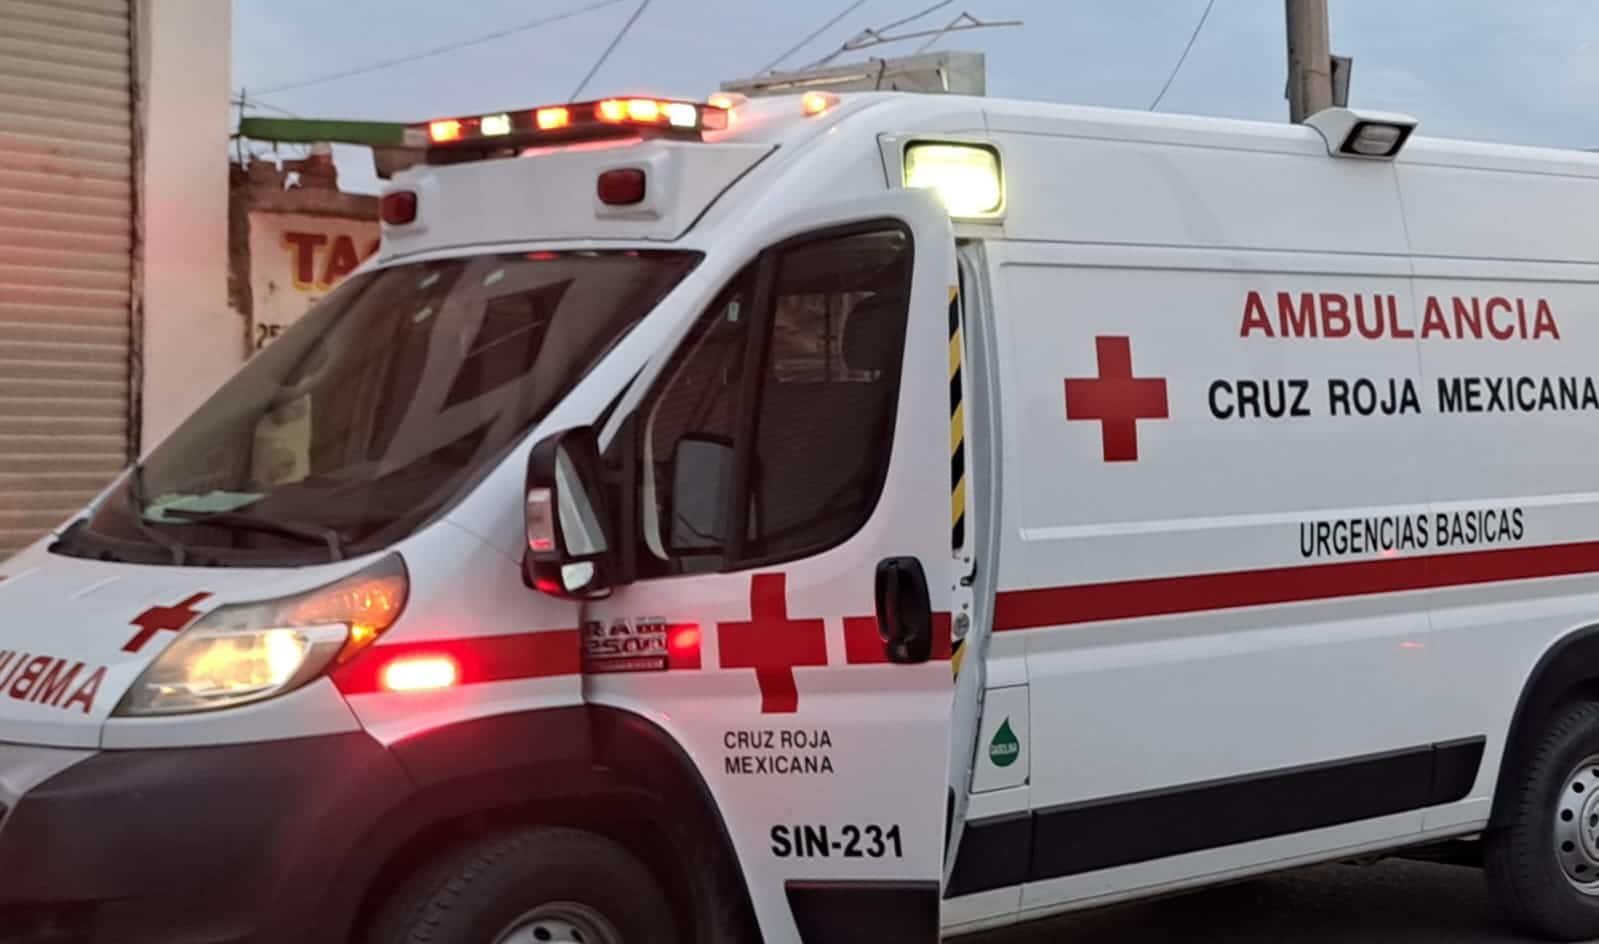 Paramédicos de la Cruz Roja auxiliaron al joven y lo trasladaron a un hospital.